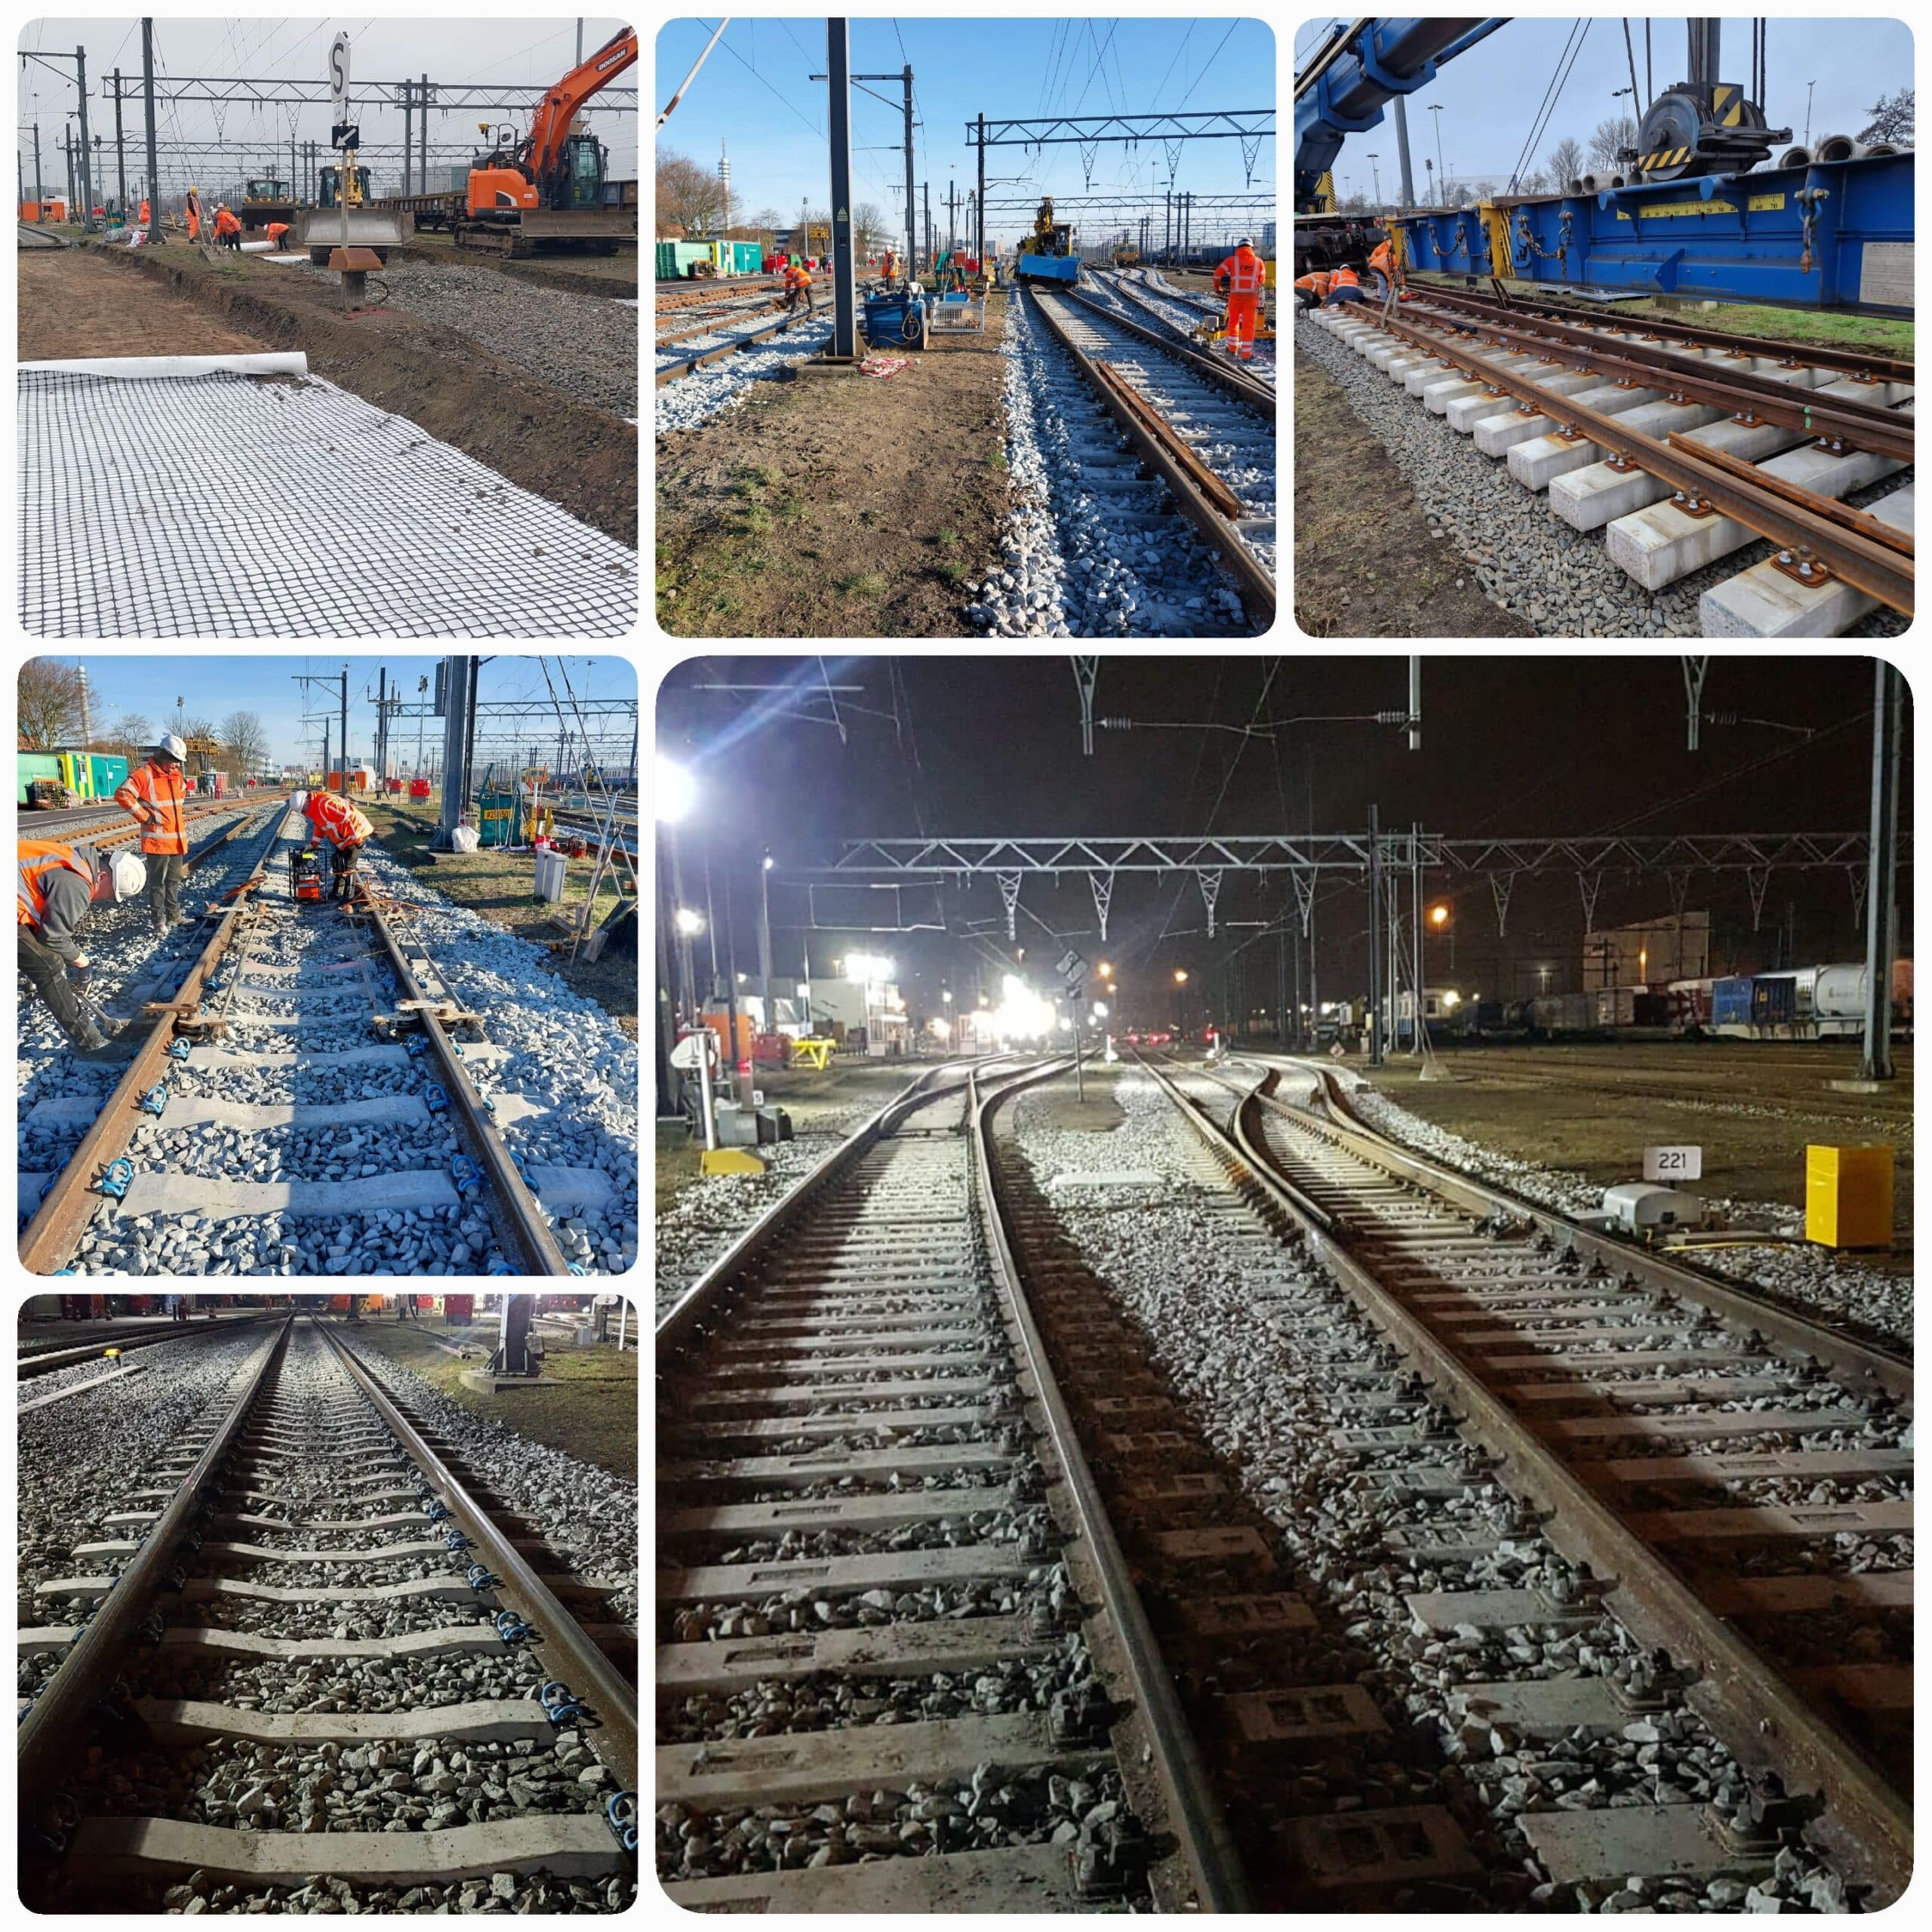 havenspoorlijn, onderhoud, vernieuwing, bovenbouw, bovenbouwvernieuwing